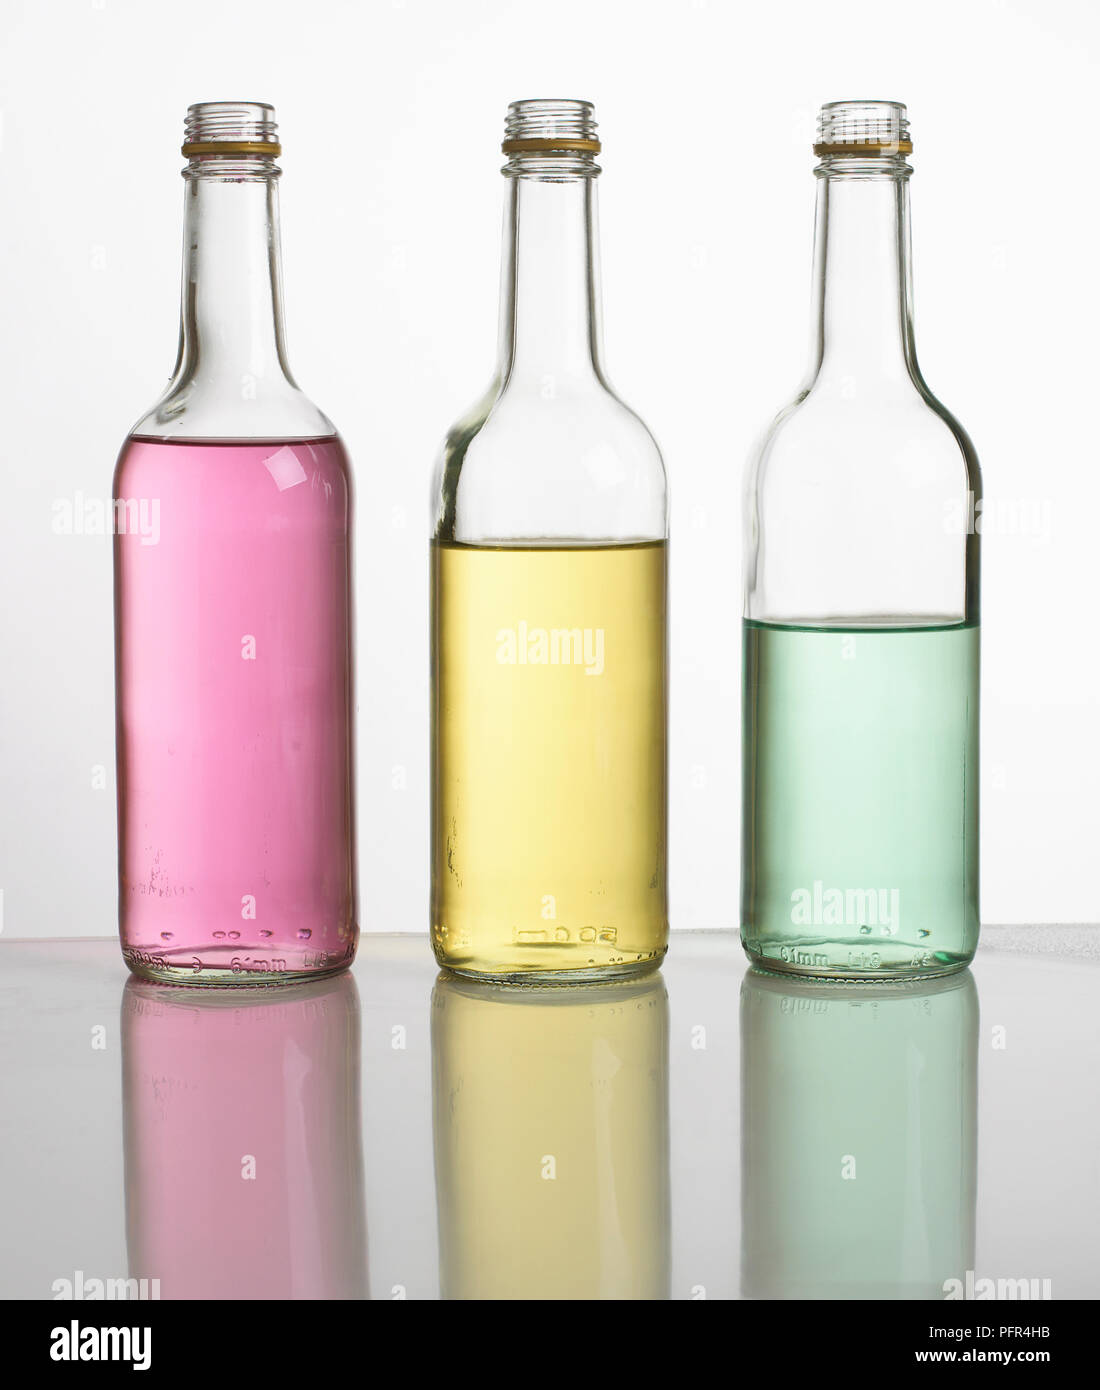 "Flasche Rohre' oder 'Flasche Xylophon", drei Flaschen mit verschiedenen Mengen von farbigen Wasser gefüllt, aufgereiht in einer Reihe Stockfoto